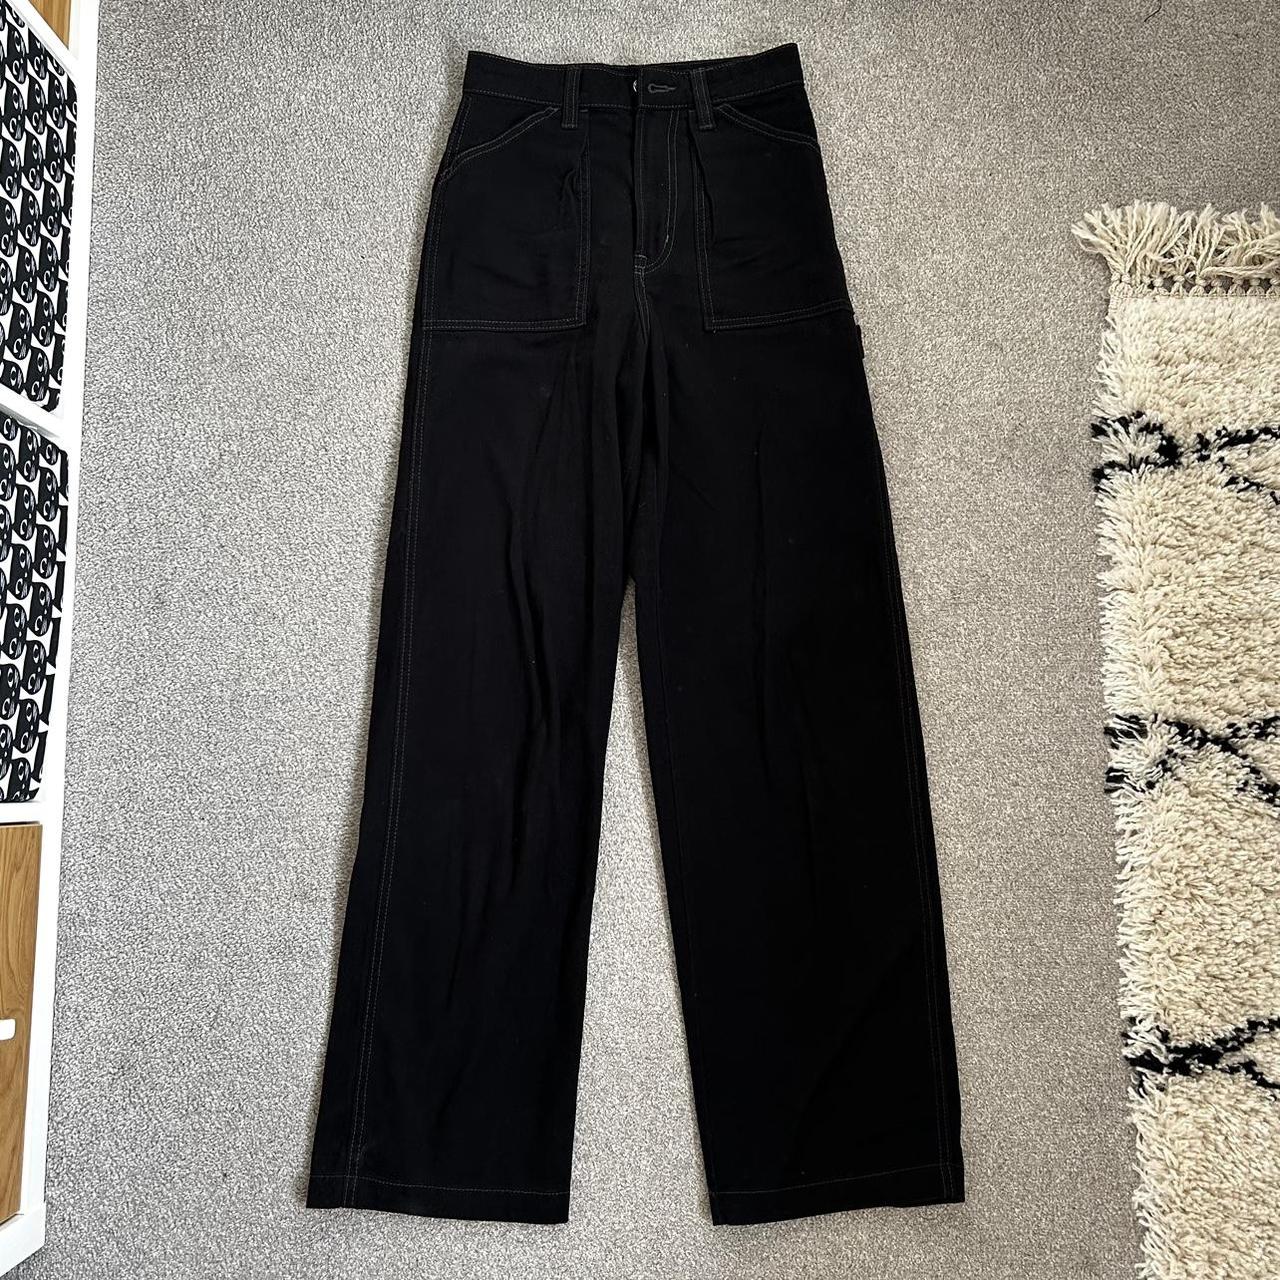 H&M Canvas Black Cargo Pants White seam details - Depop